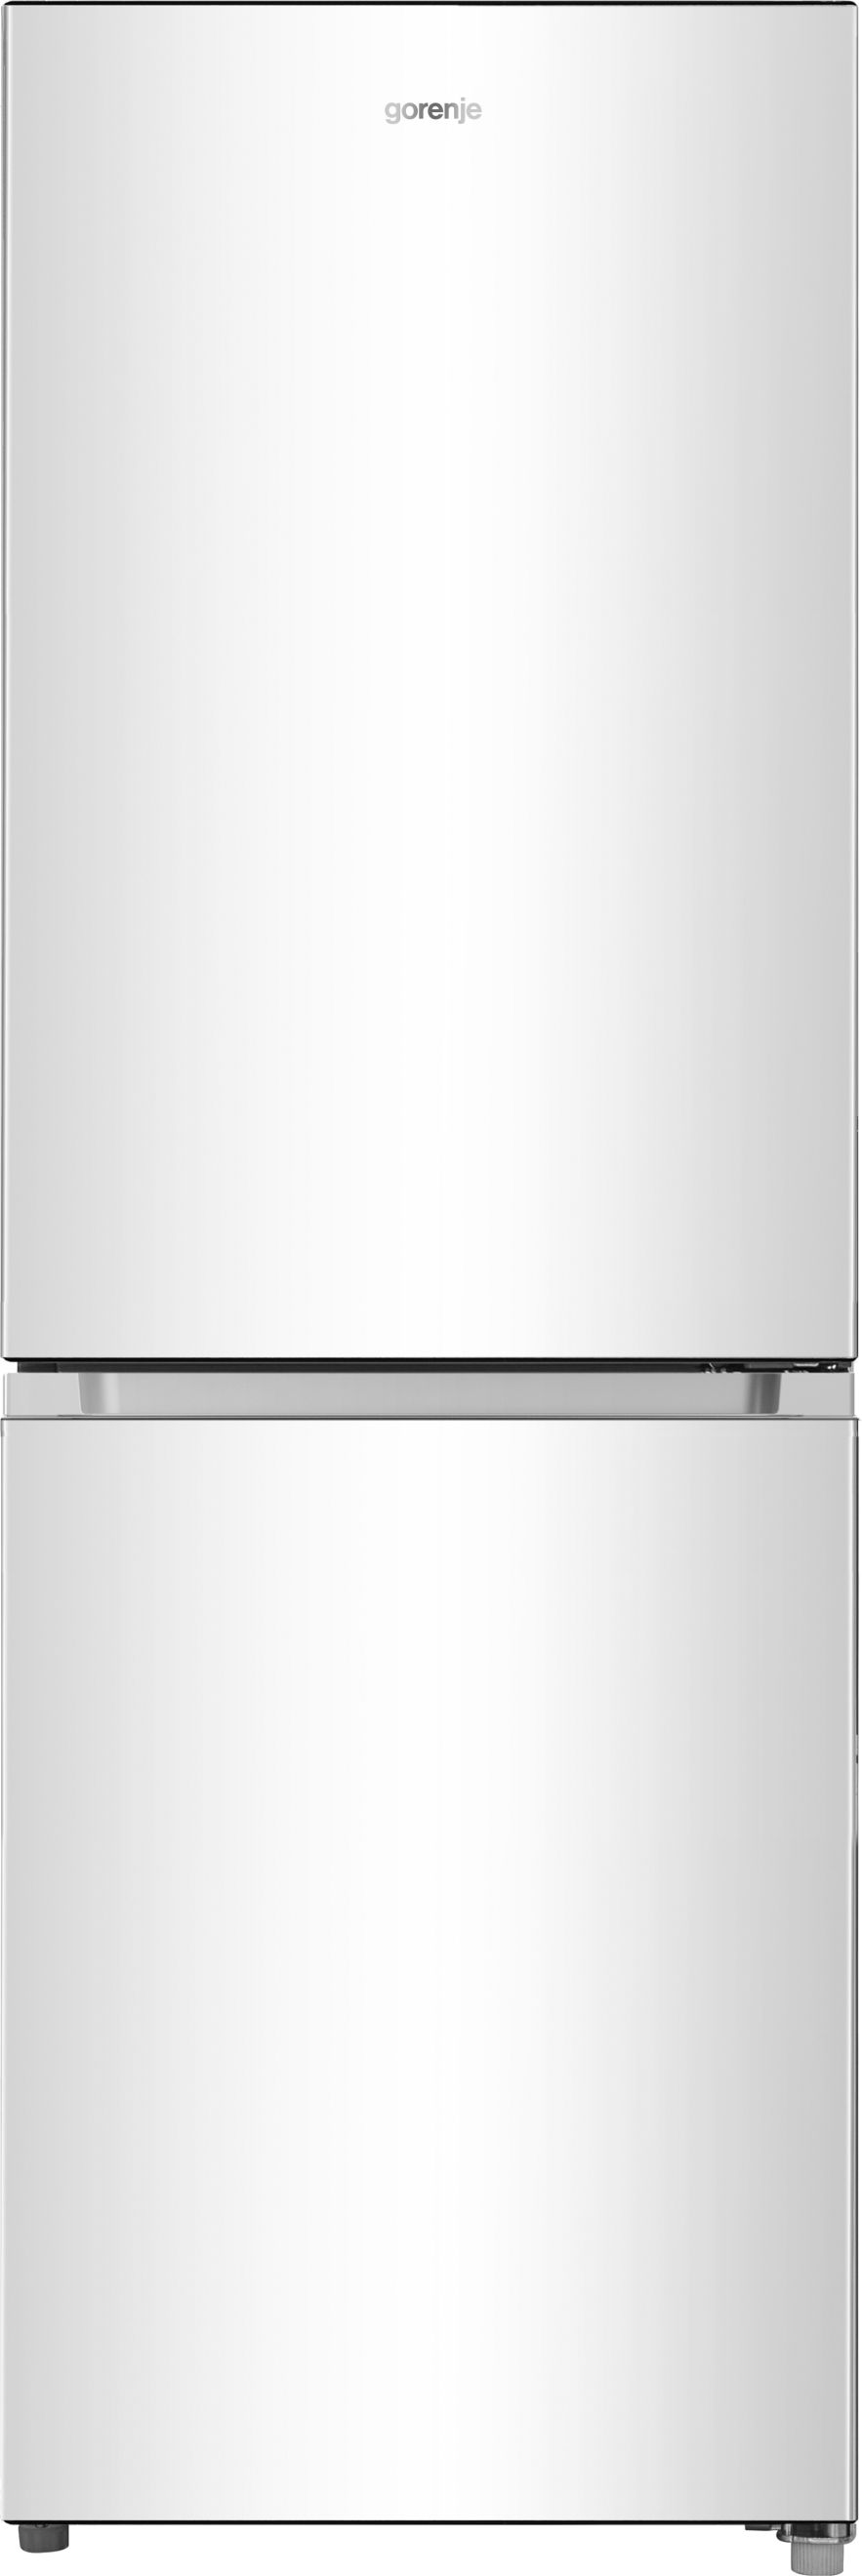 Характеристики холодильник Gorenje RK4161PW4